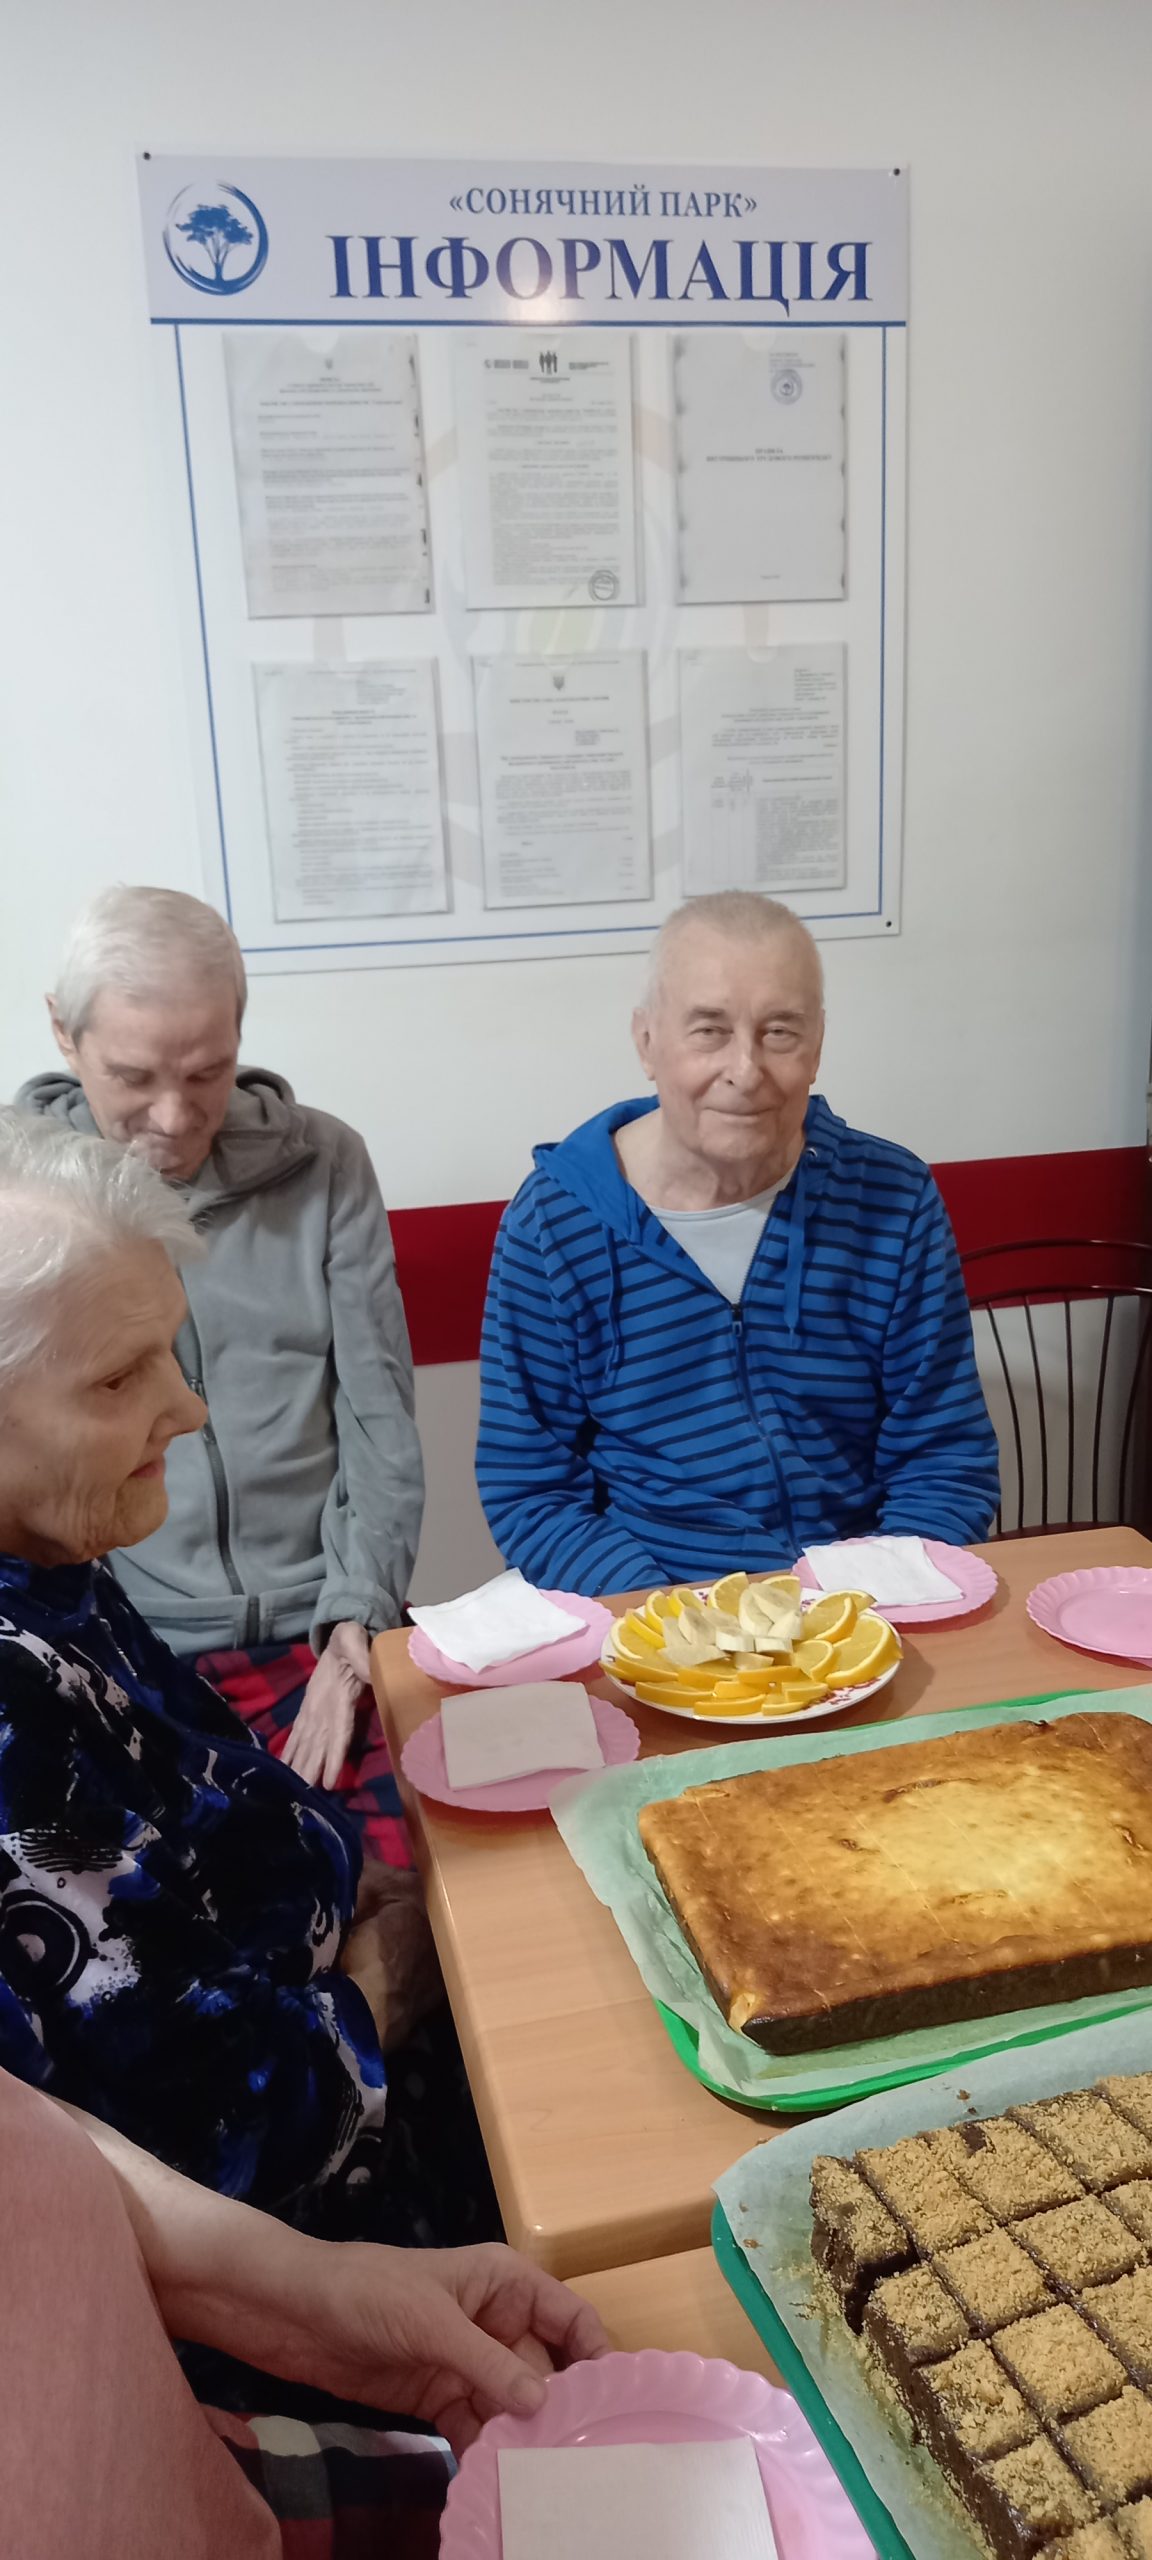 дом престарелых, Одесса, стоимость услуг, размещение, уход за пожилыми после инсульта, хоспис